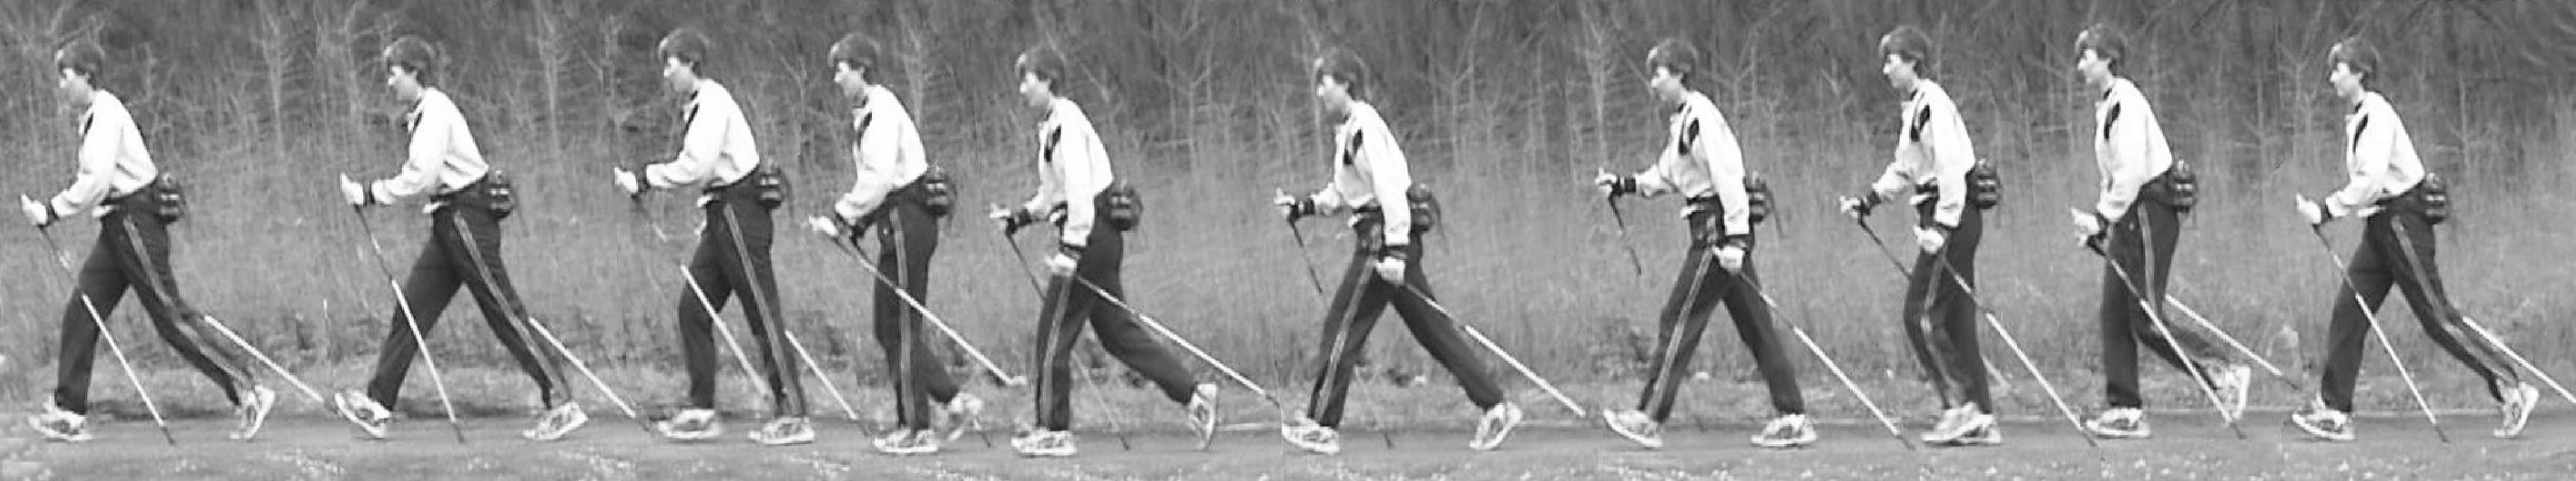 Jeden krokový cyklus probandky při chůzi s holemi (nordic walking).